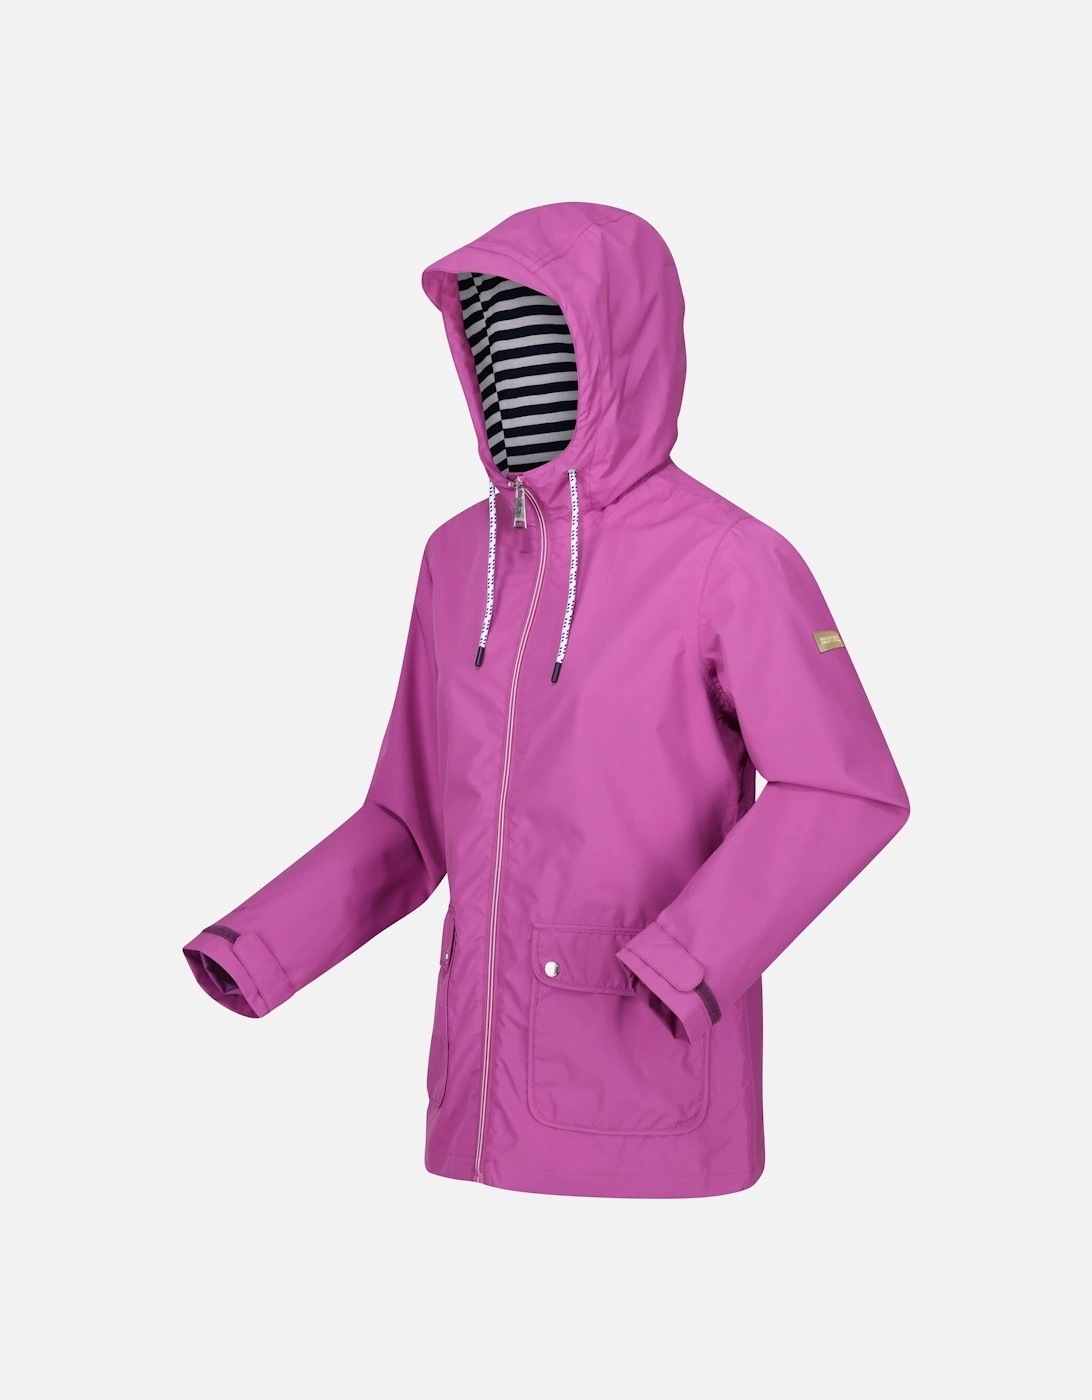 Womens/Ladies Bayletta Waterproof Jacket